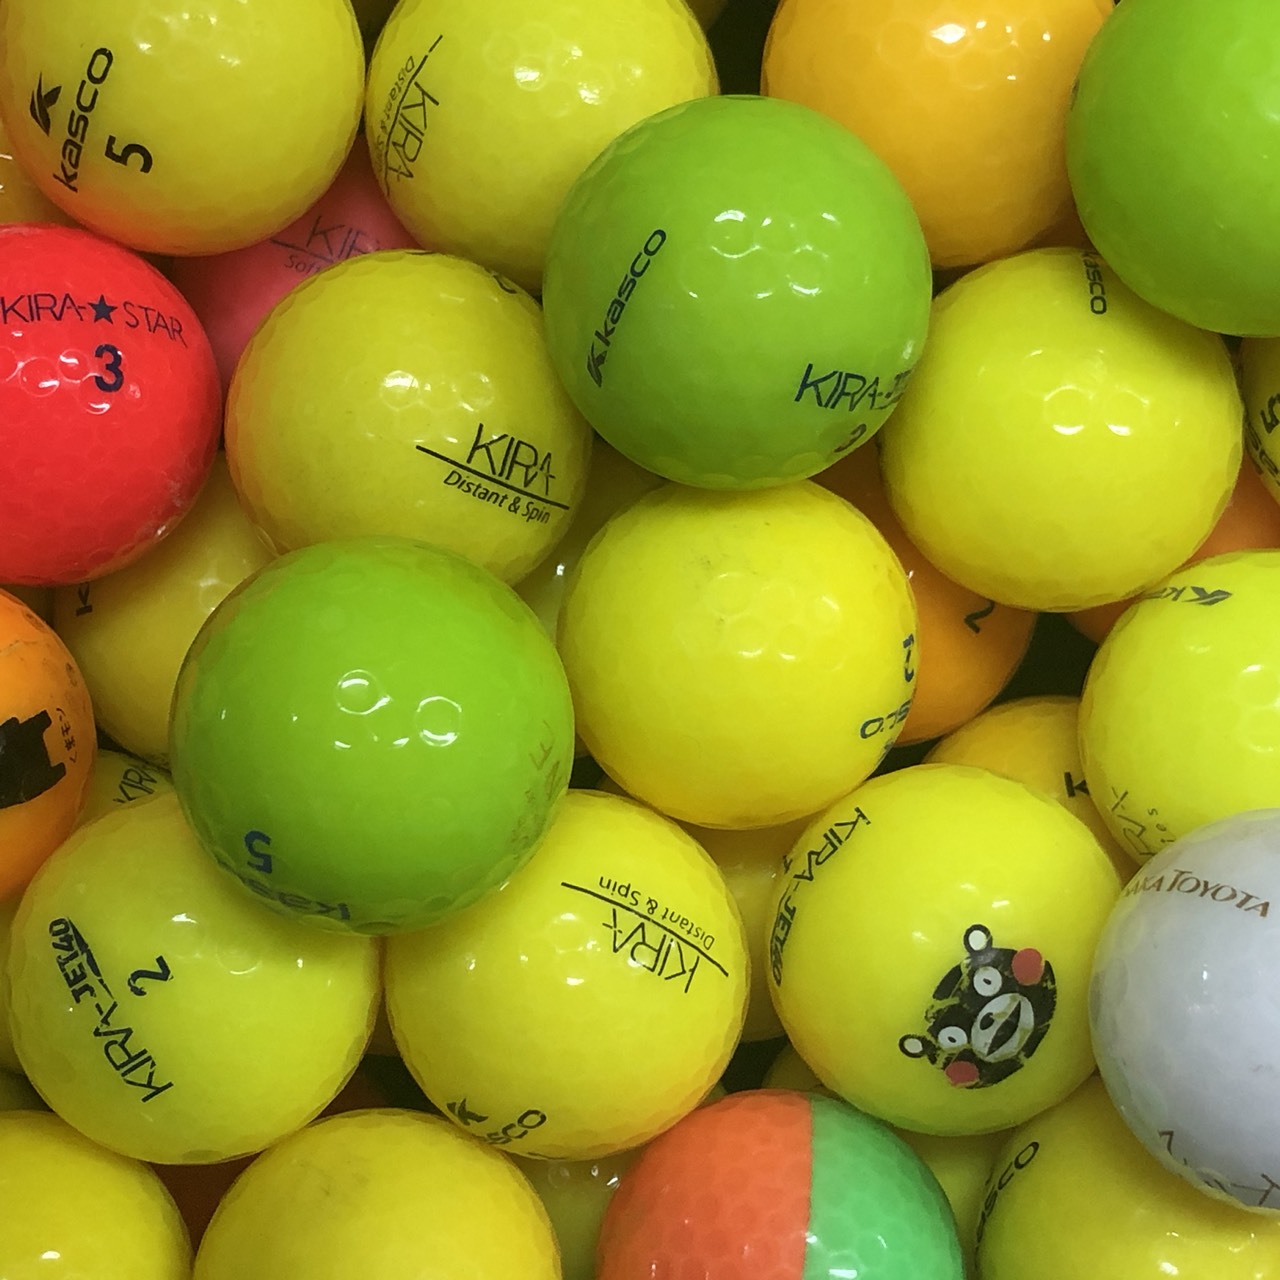 ロストボール キャスコ KIRA シリーズ混合 50球 Bランク 中古 ゴルフボール エコボール キラスターを除く